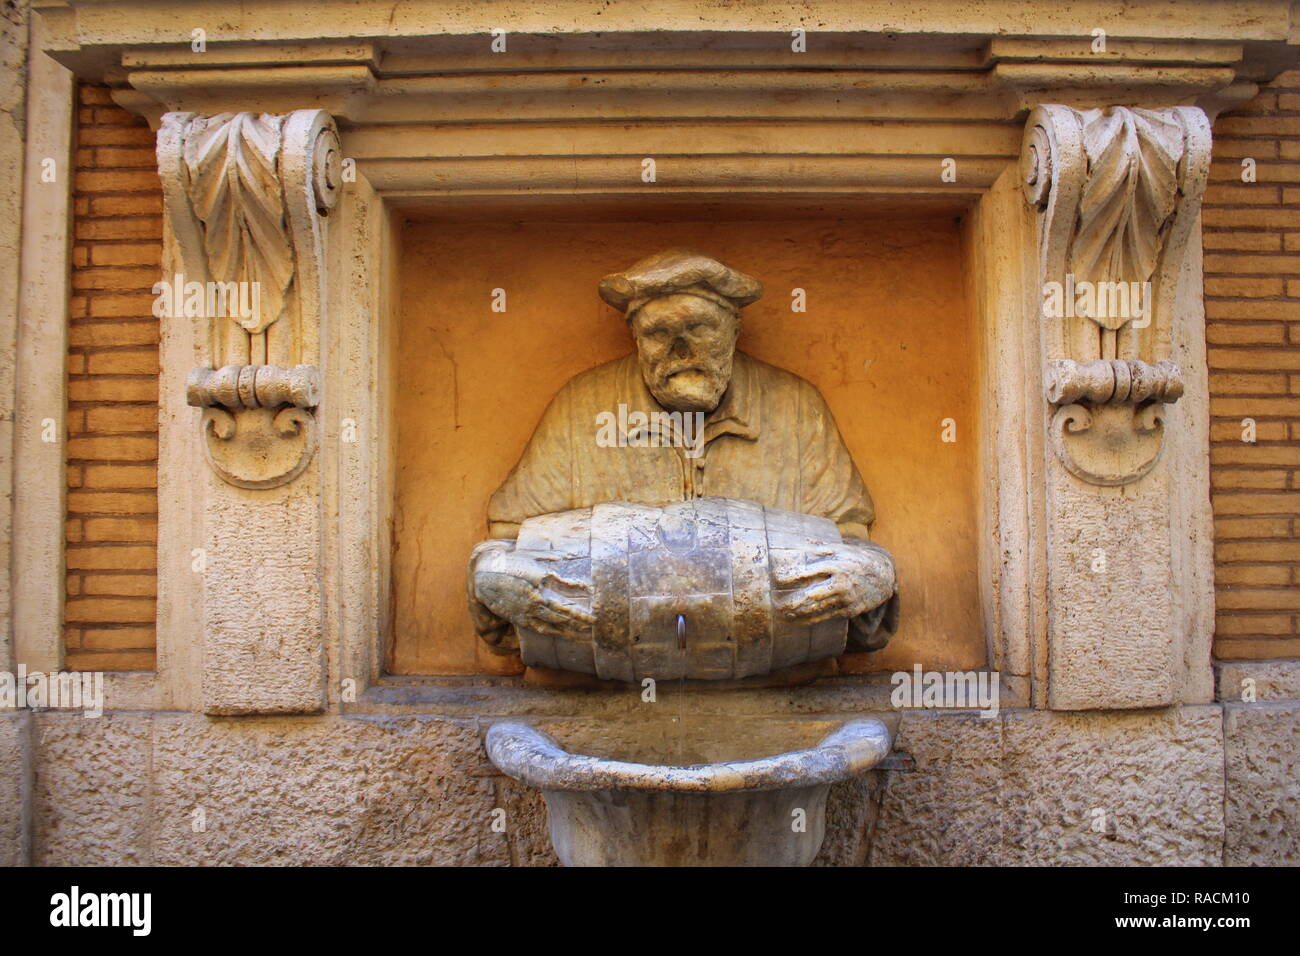 Rom, Italien, 28. Dezember 2018: Statue eines alten Mannes gießt Wasser aus einem Fass verwendet als Brunnen den Spitznamen "The Porter". Es war im Jahre 1580 gemacht und u Stockfoto